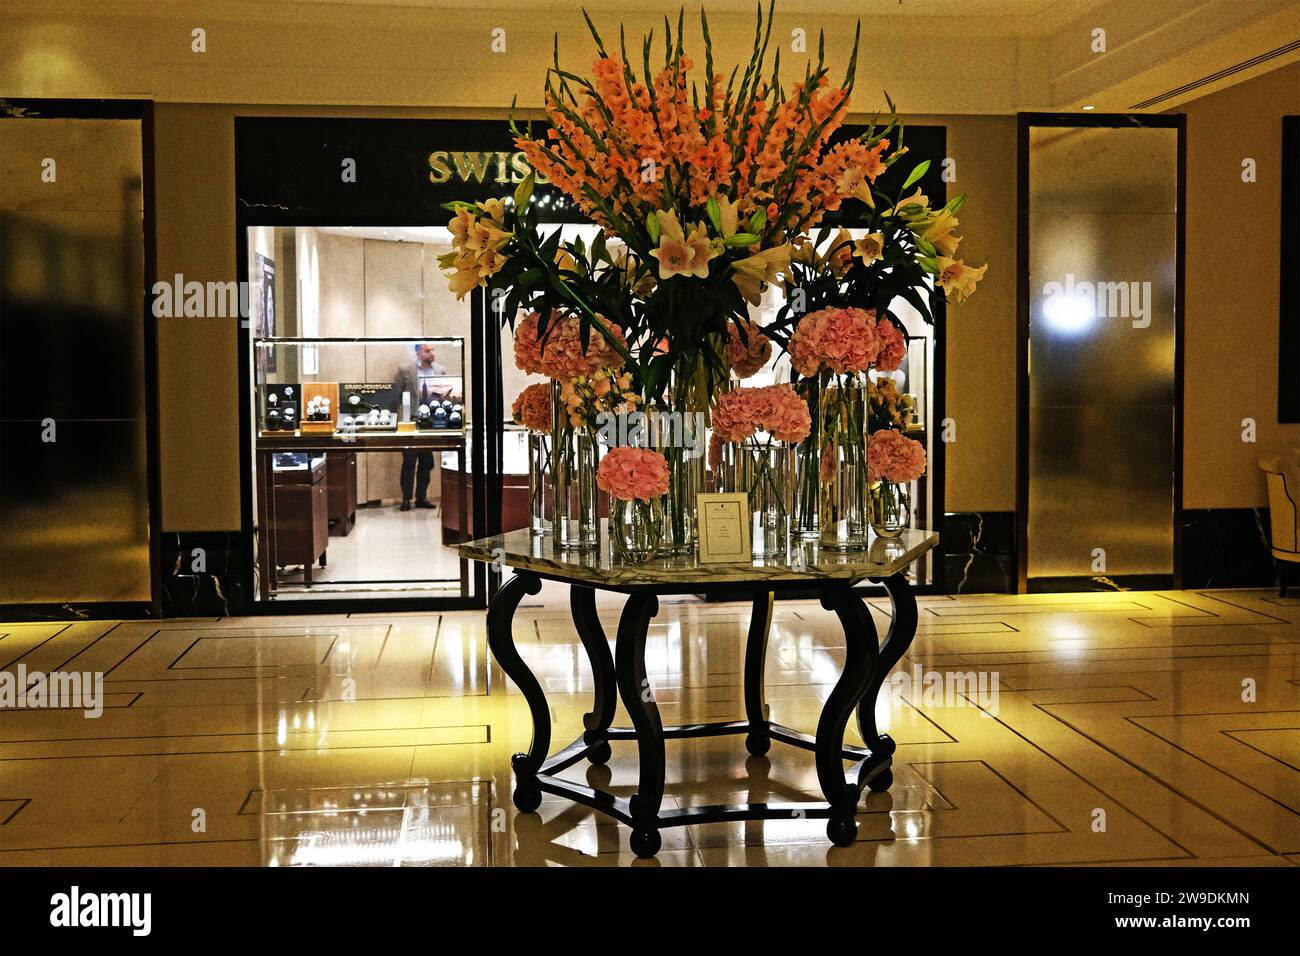 Un'elegante lobby dell'hotel con una sontuosa esposizione floreale che comprende ortensie, lillies e gladioli in varie sfumature di rosa con luce soffusa e d'ambiente Foto Stock